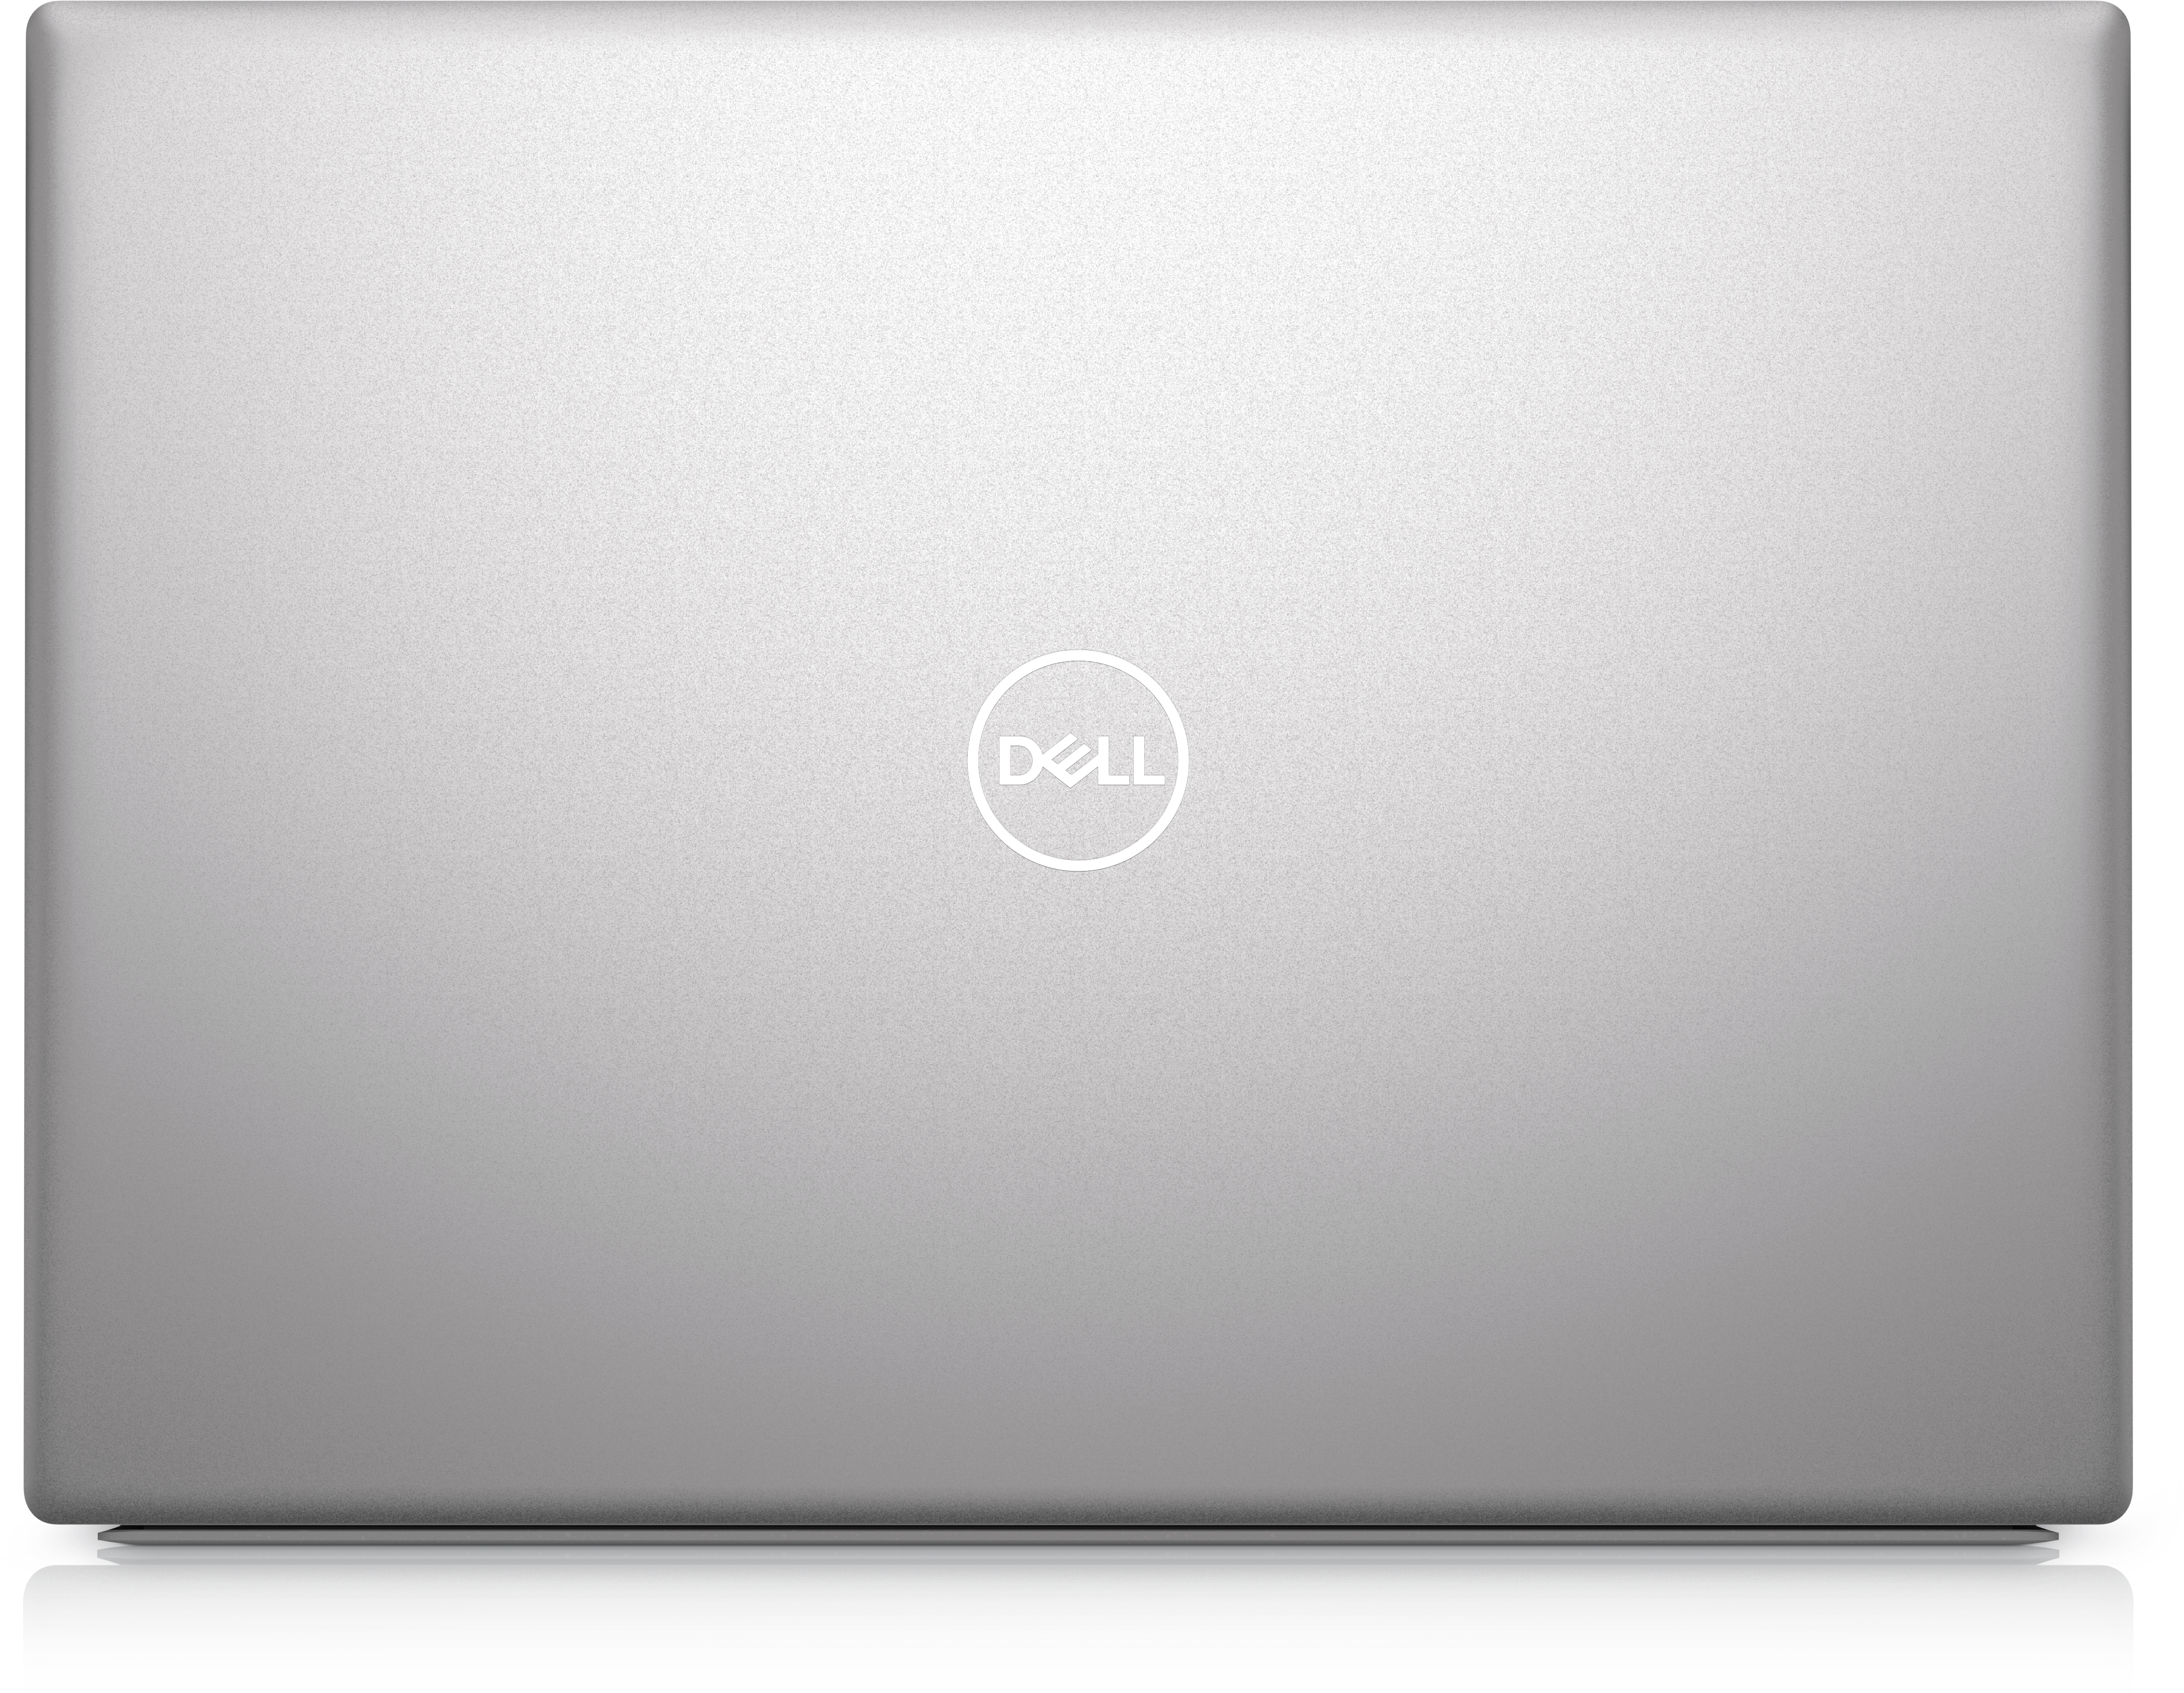 【超激得低価】Dell inspiron 14 5425 Windowsノート本体